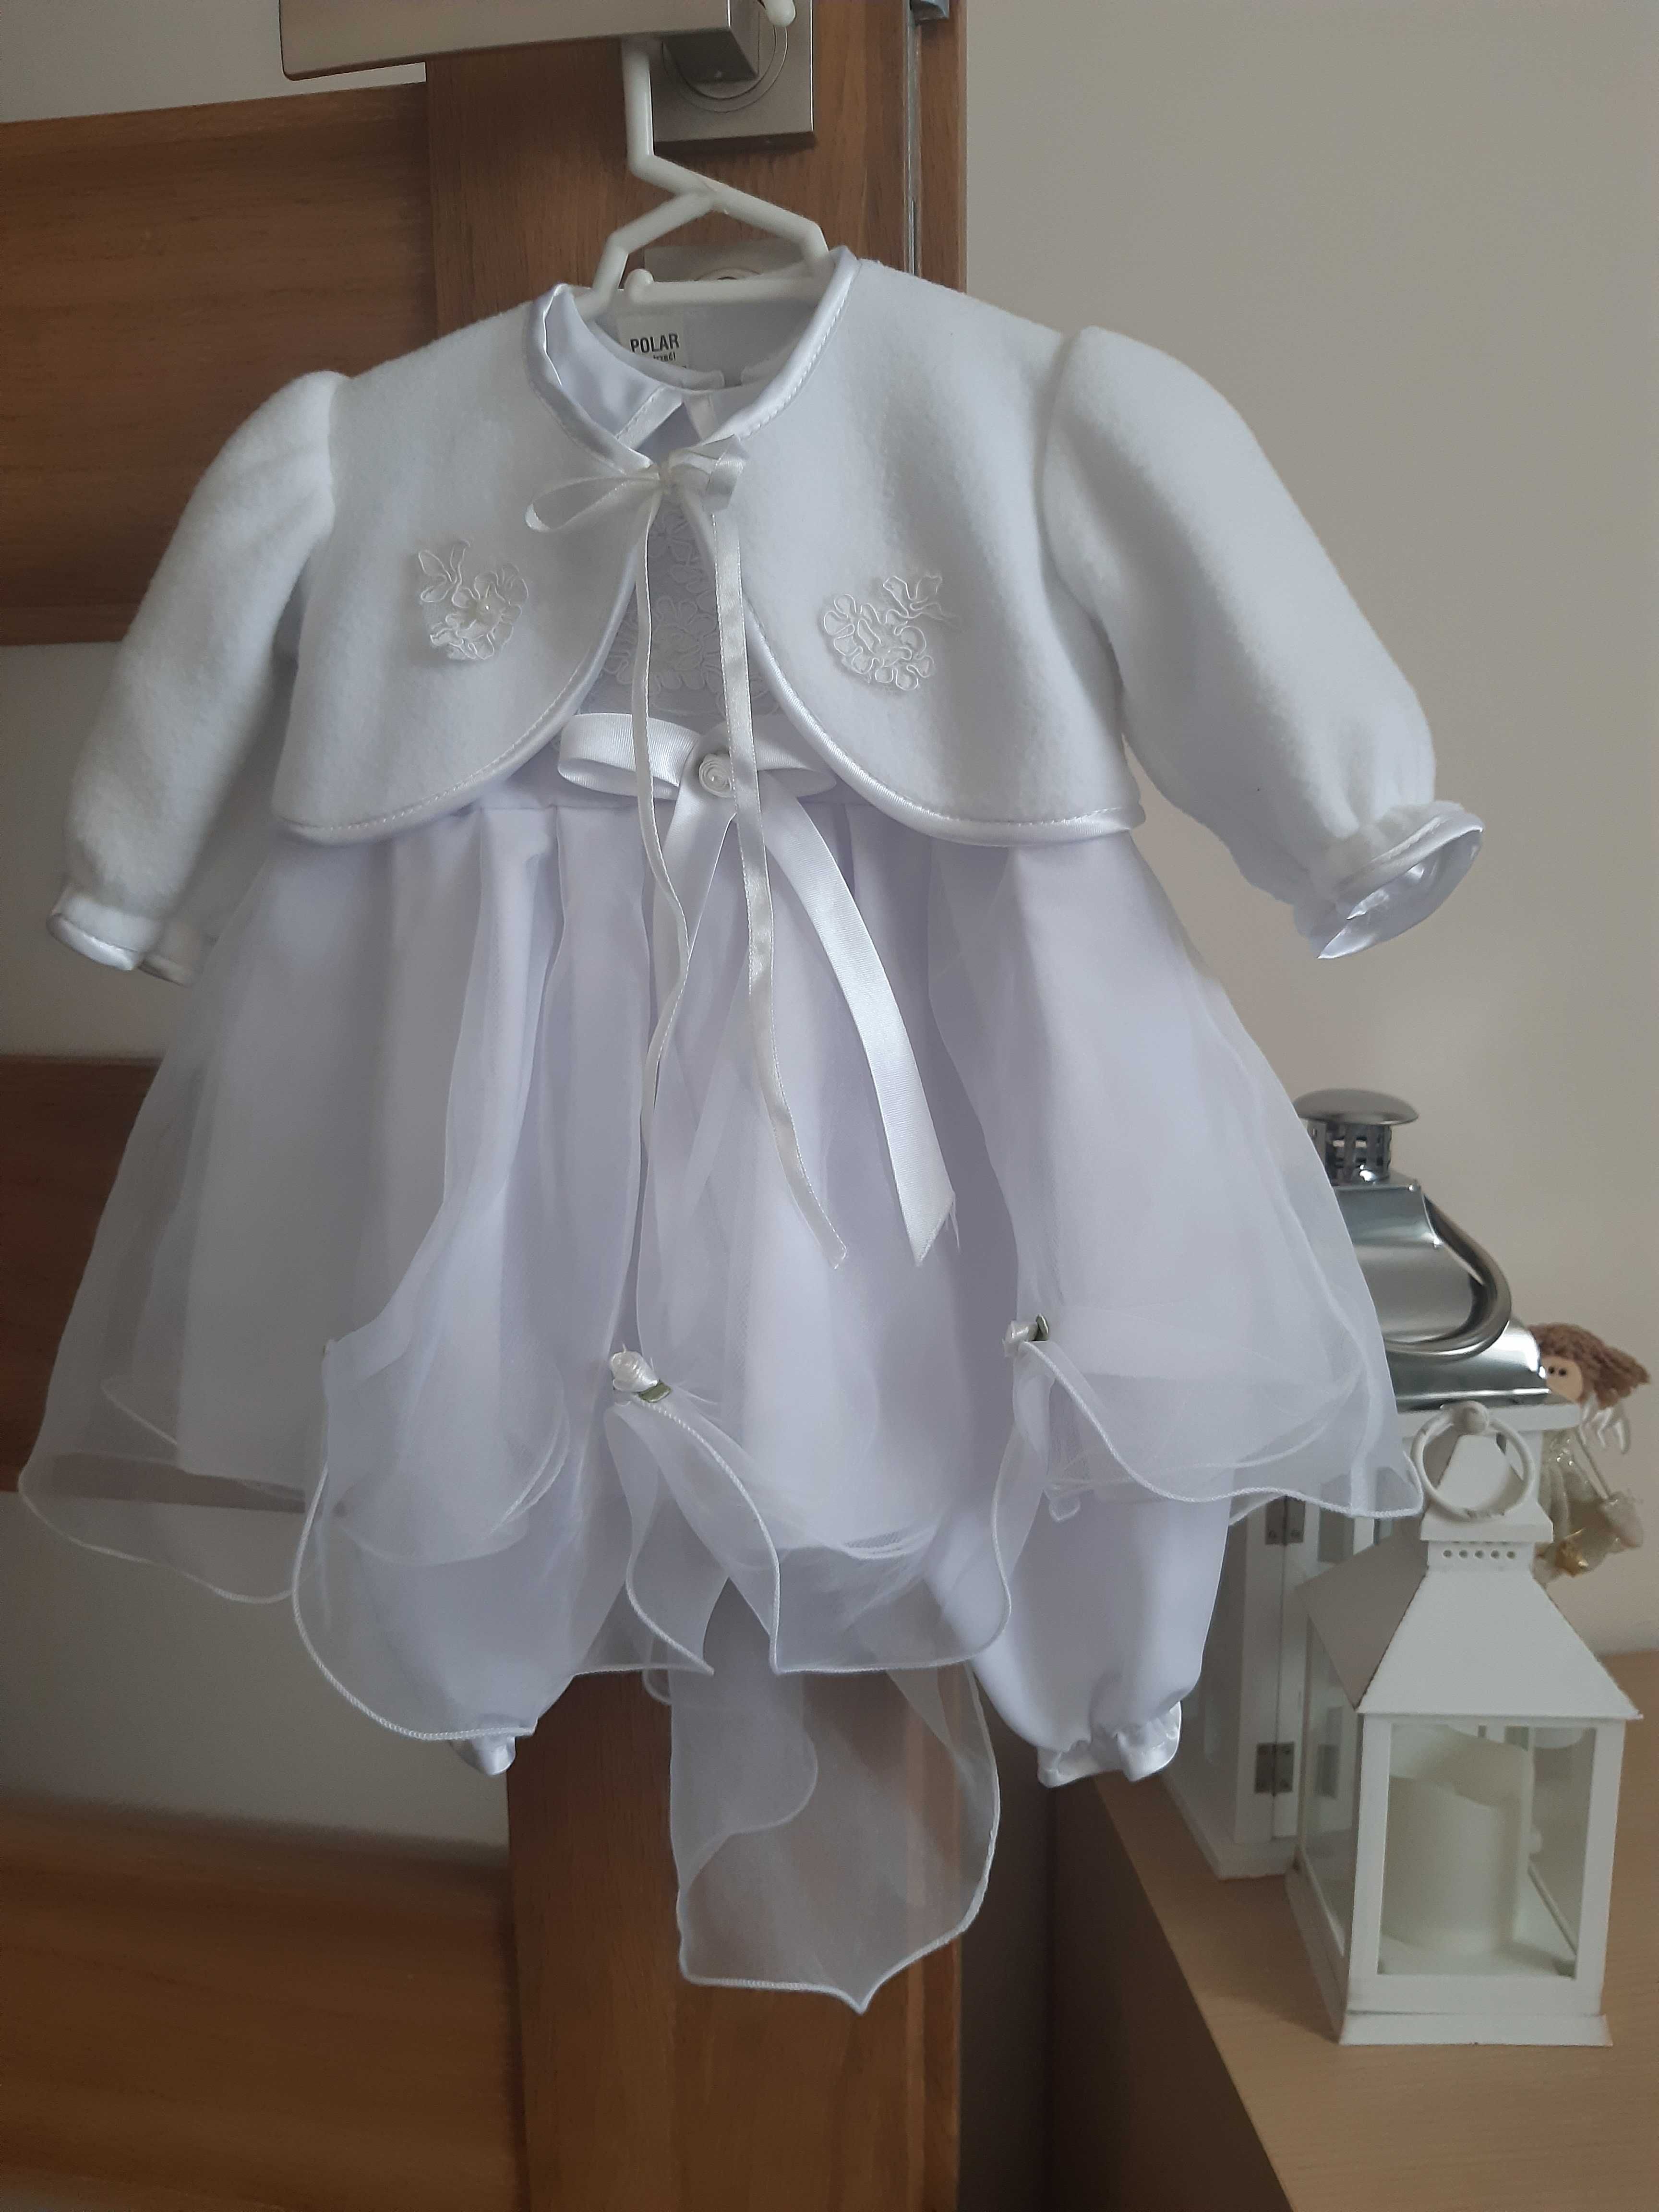 Ubranko - sukienka do chrztu dla dziewczynki roz. 62